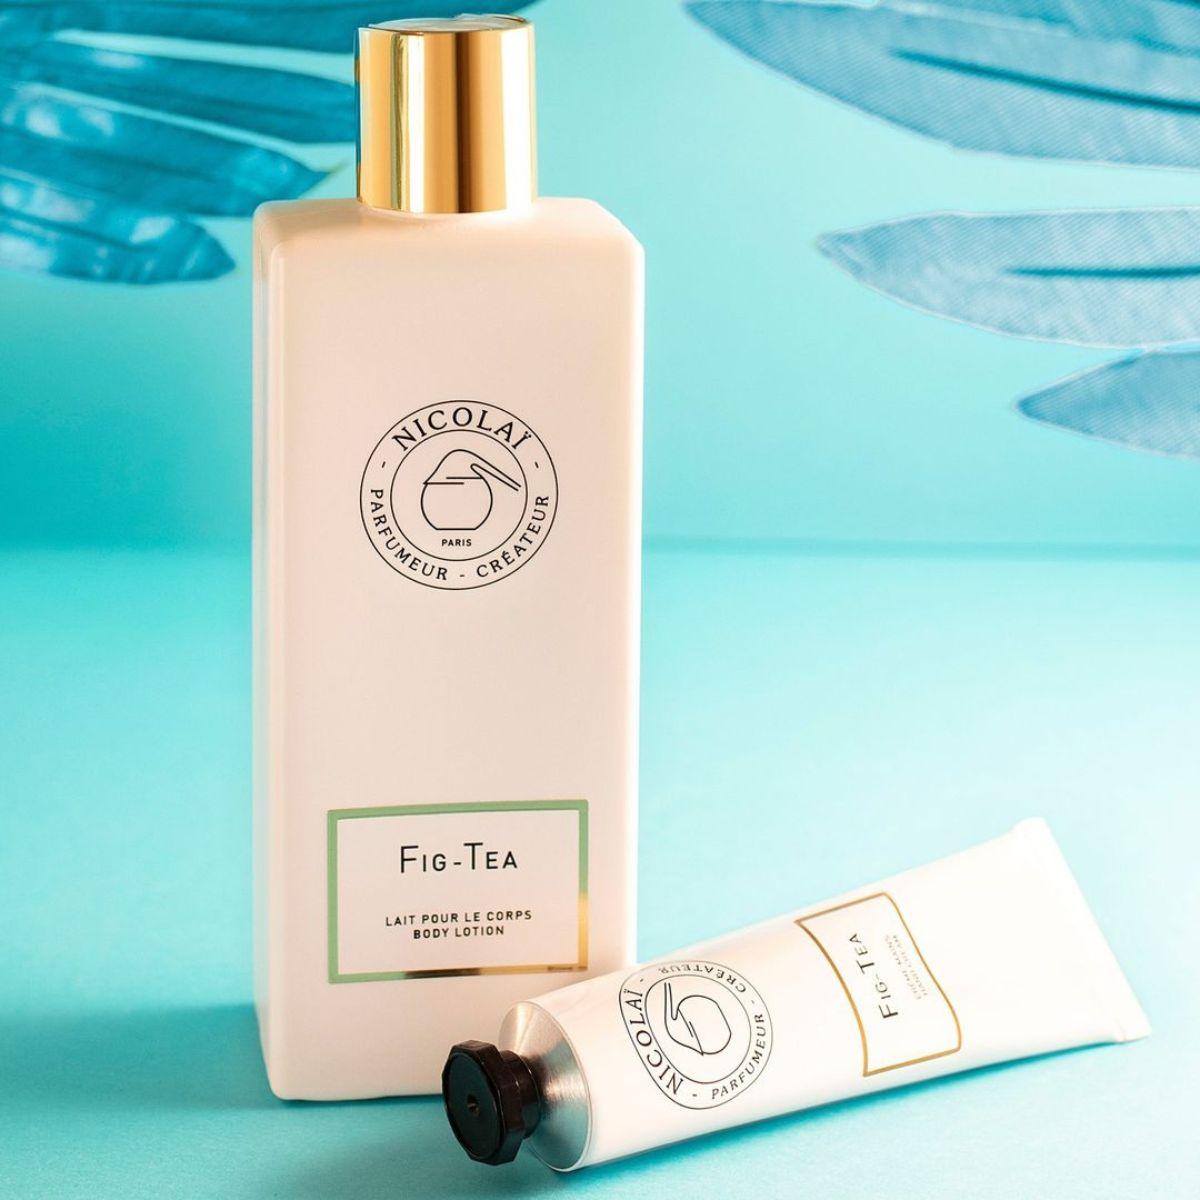 Afbeelding van Fig Tea hand cream and body lotion van het merk Nicolai Paris